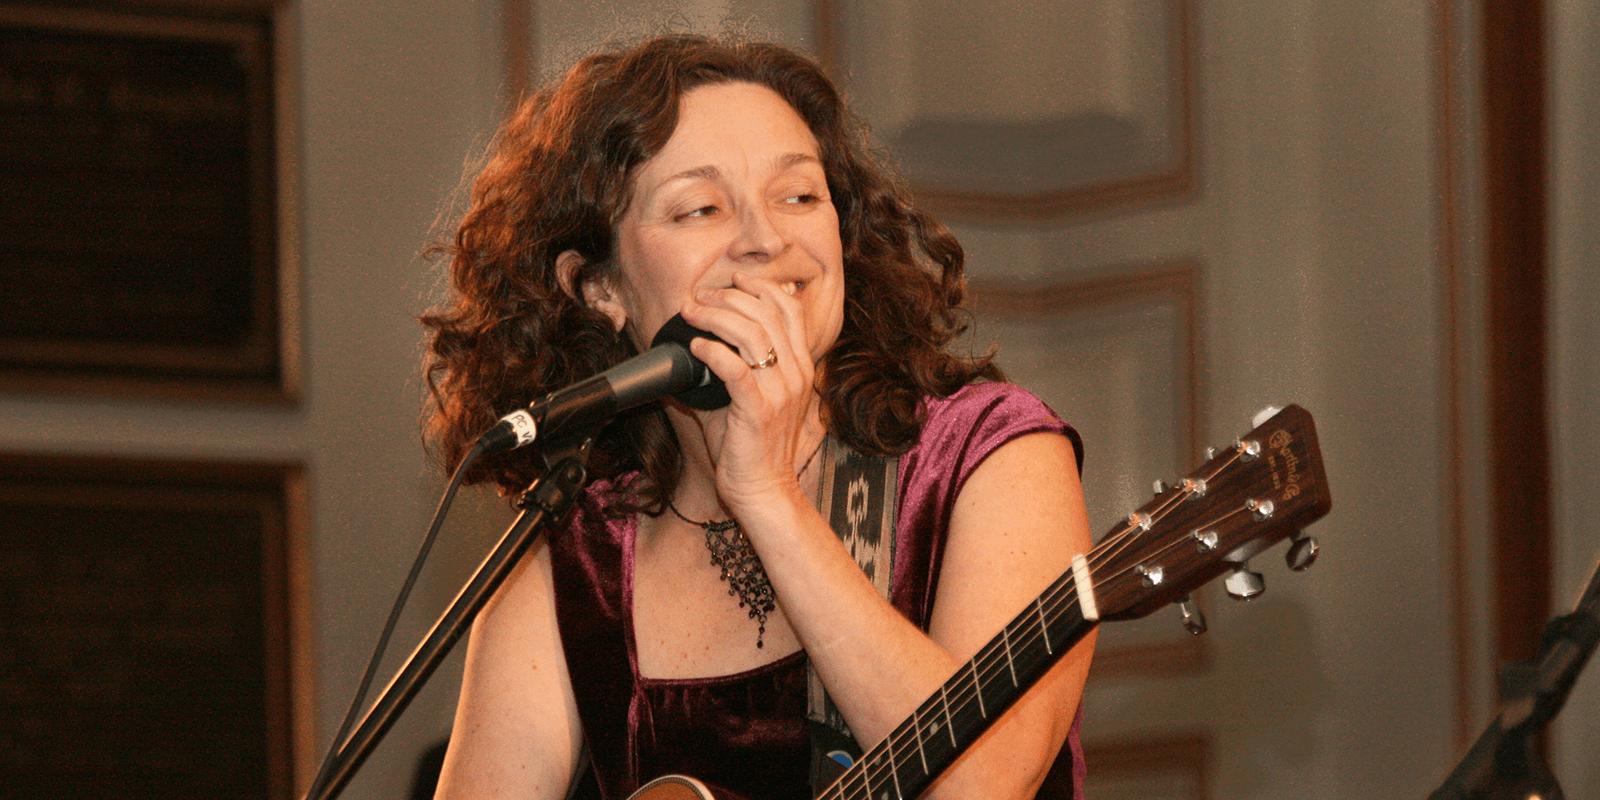 Vermont singer songwriter Patti Casey